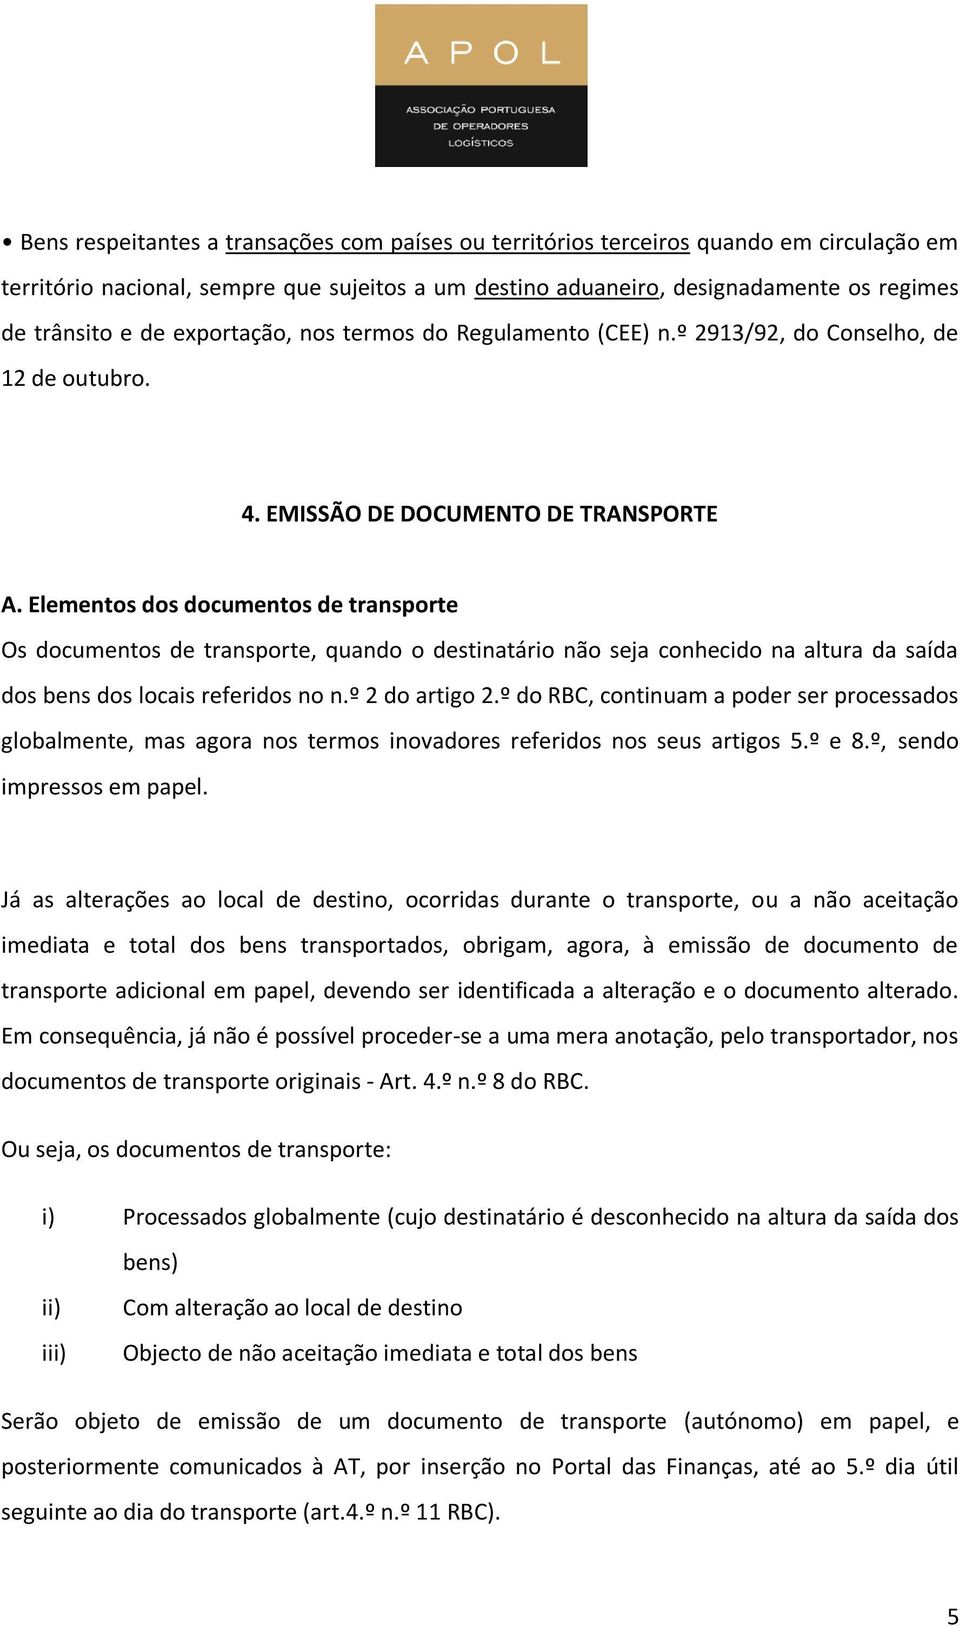 Elementos dos documentos de transporte Os documentos de transporte, quando o destinatário não seja conhecido na altura da saída dos bens dos locais referidos no n.º 2 do artigo 2.